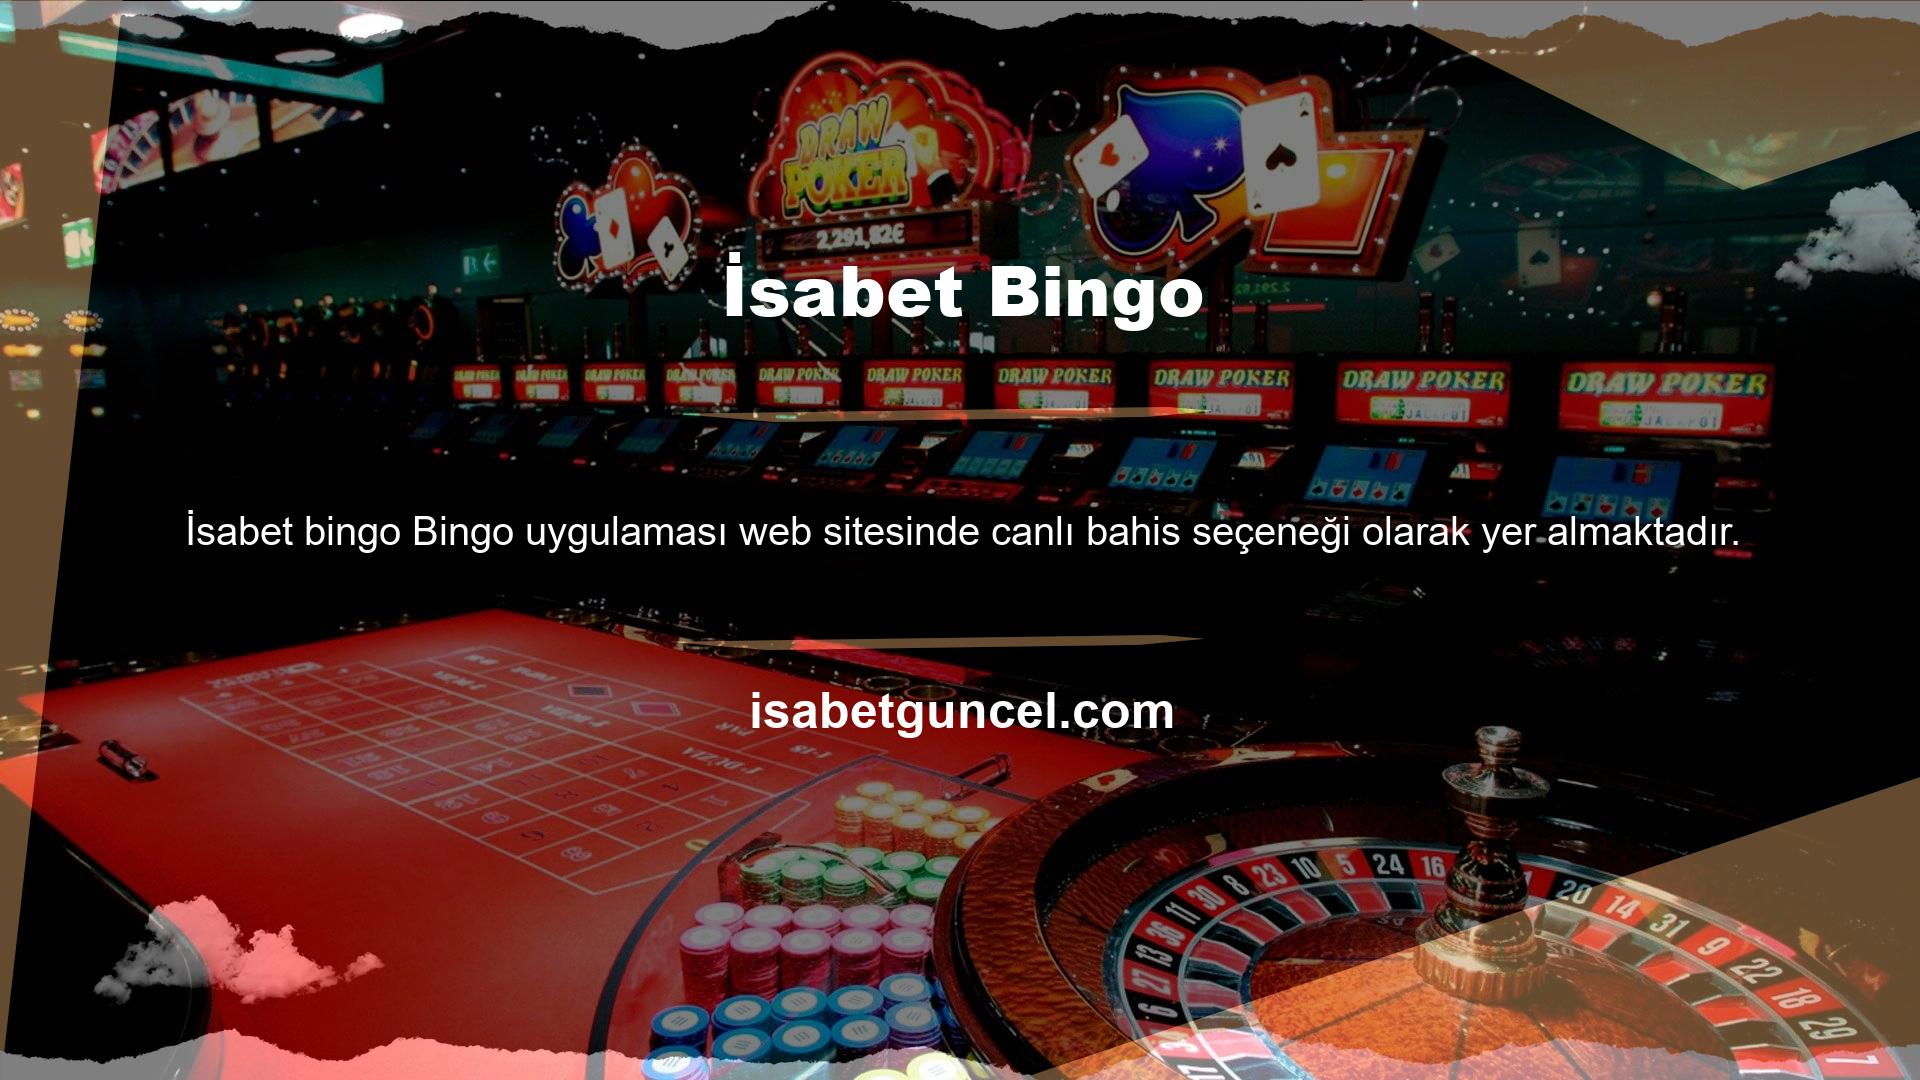 Bingo numaraları uygulama ekranında çizilir ve poker hayranları kartlarıyla bunları takip edebilir